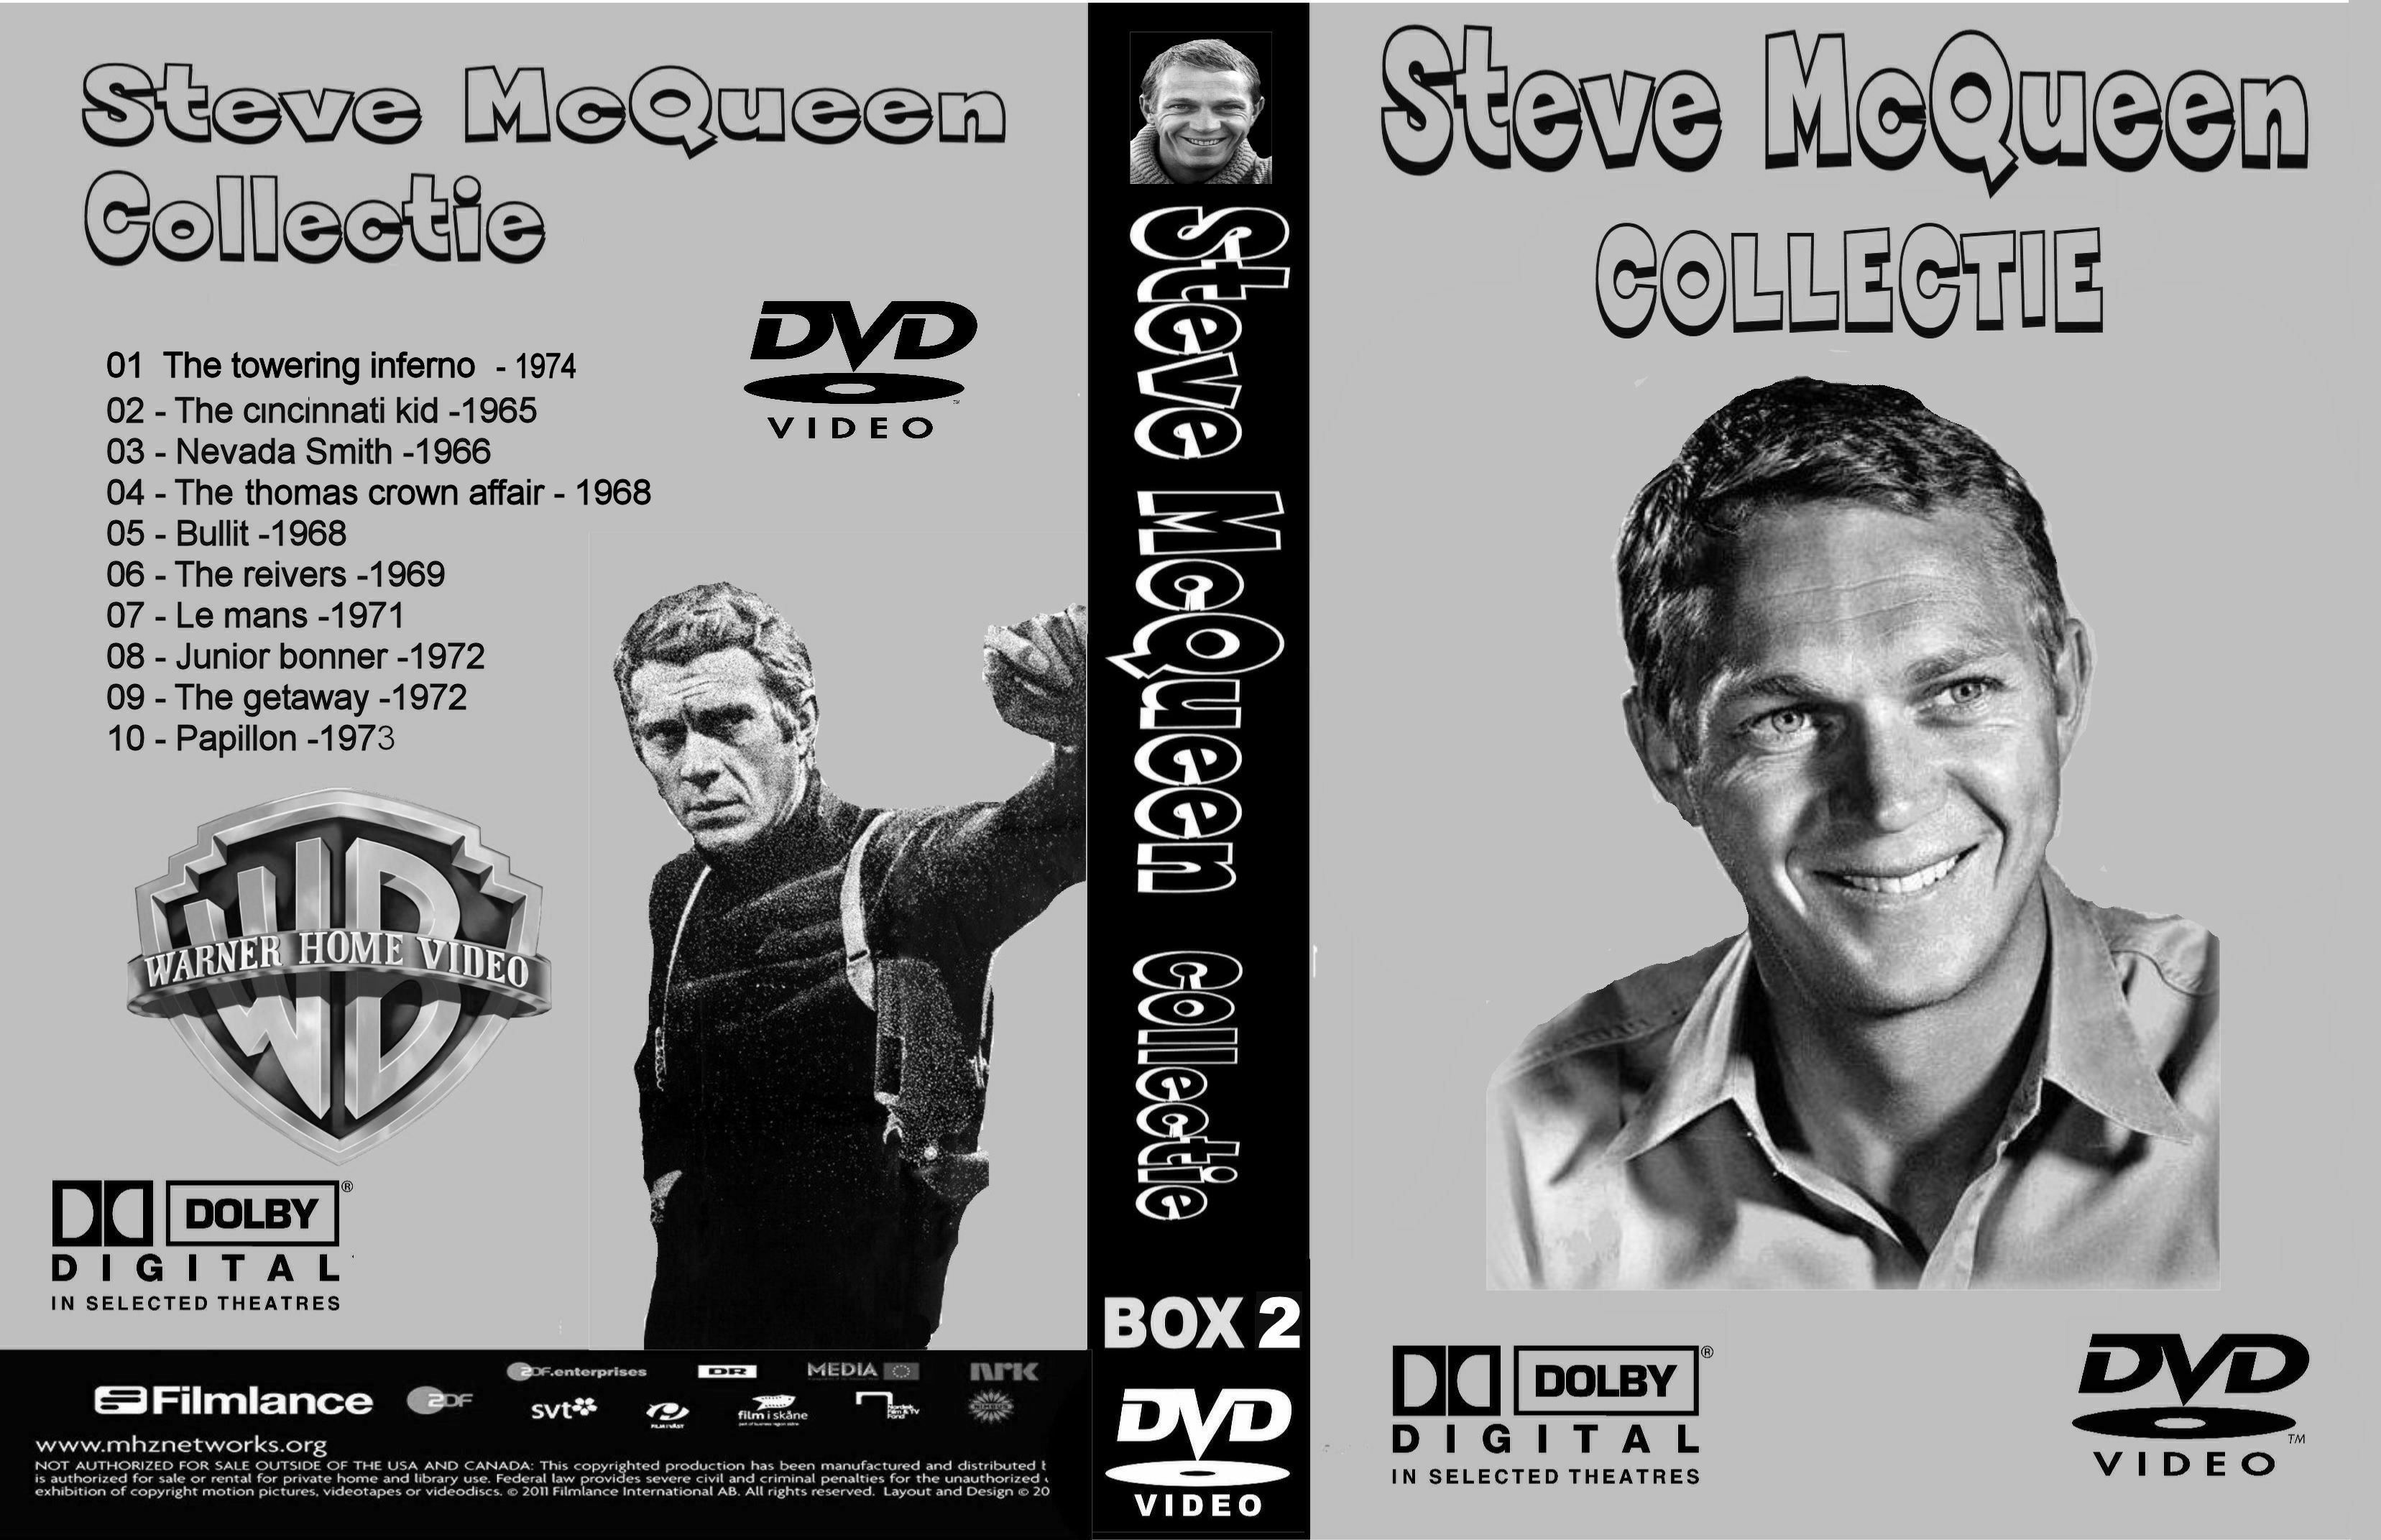 Steve McQueen Collectie Box 2 DvD 9 van 10